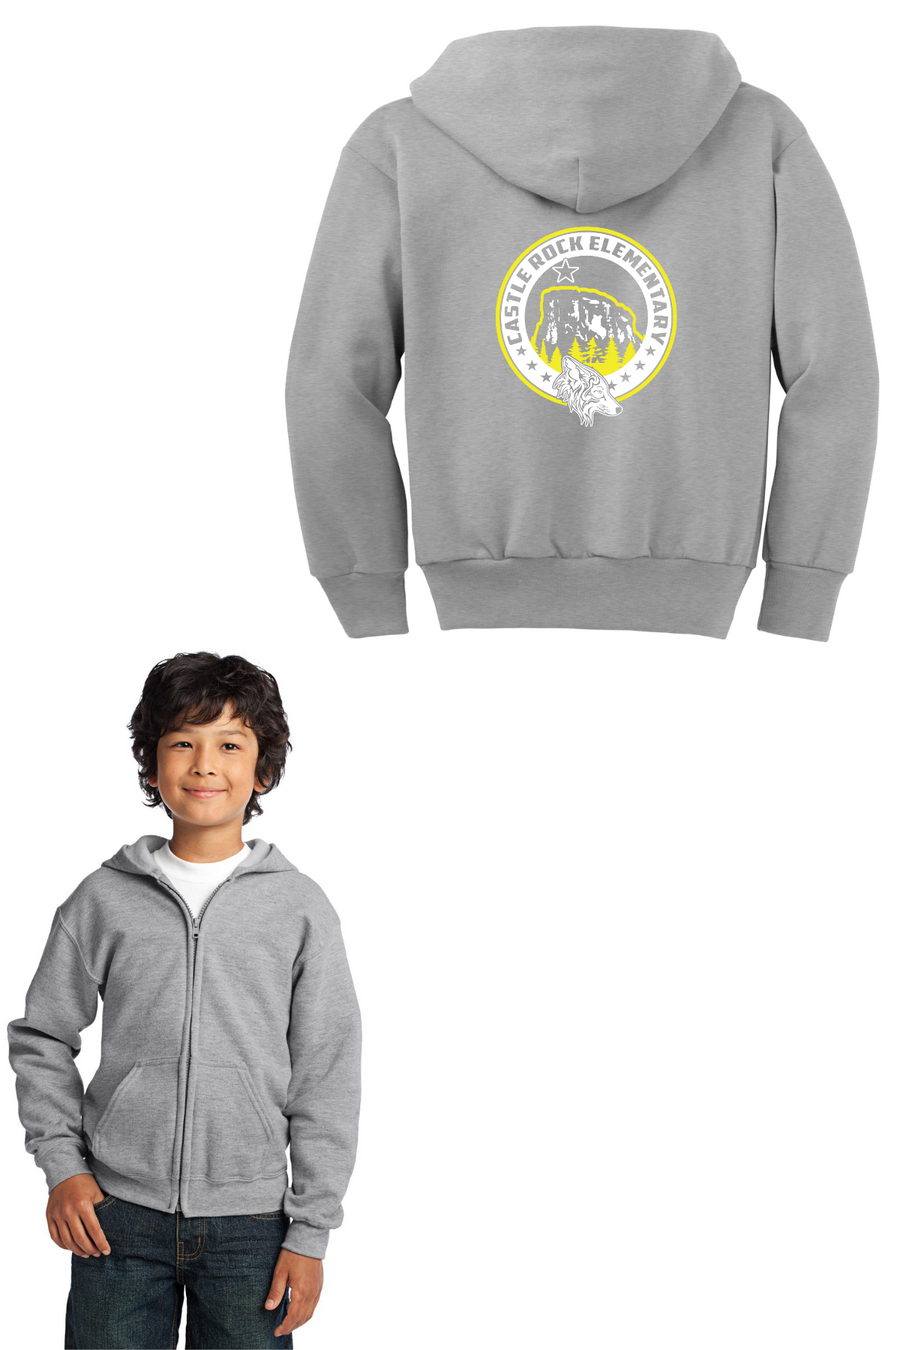 Castle Rock Elementary Spirit Wear 2023/24 On-Demand-Unisex Full-Zip Hooded Sweatshirt